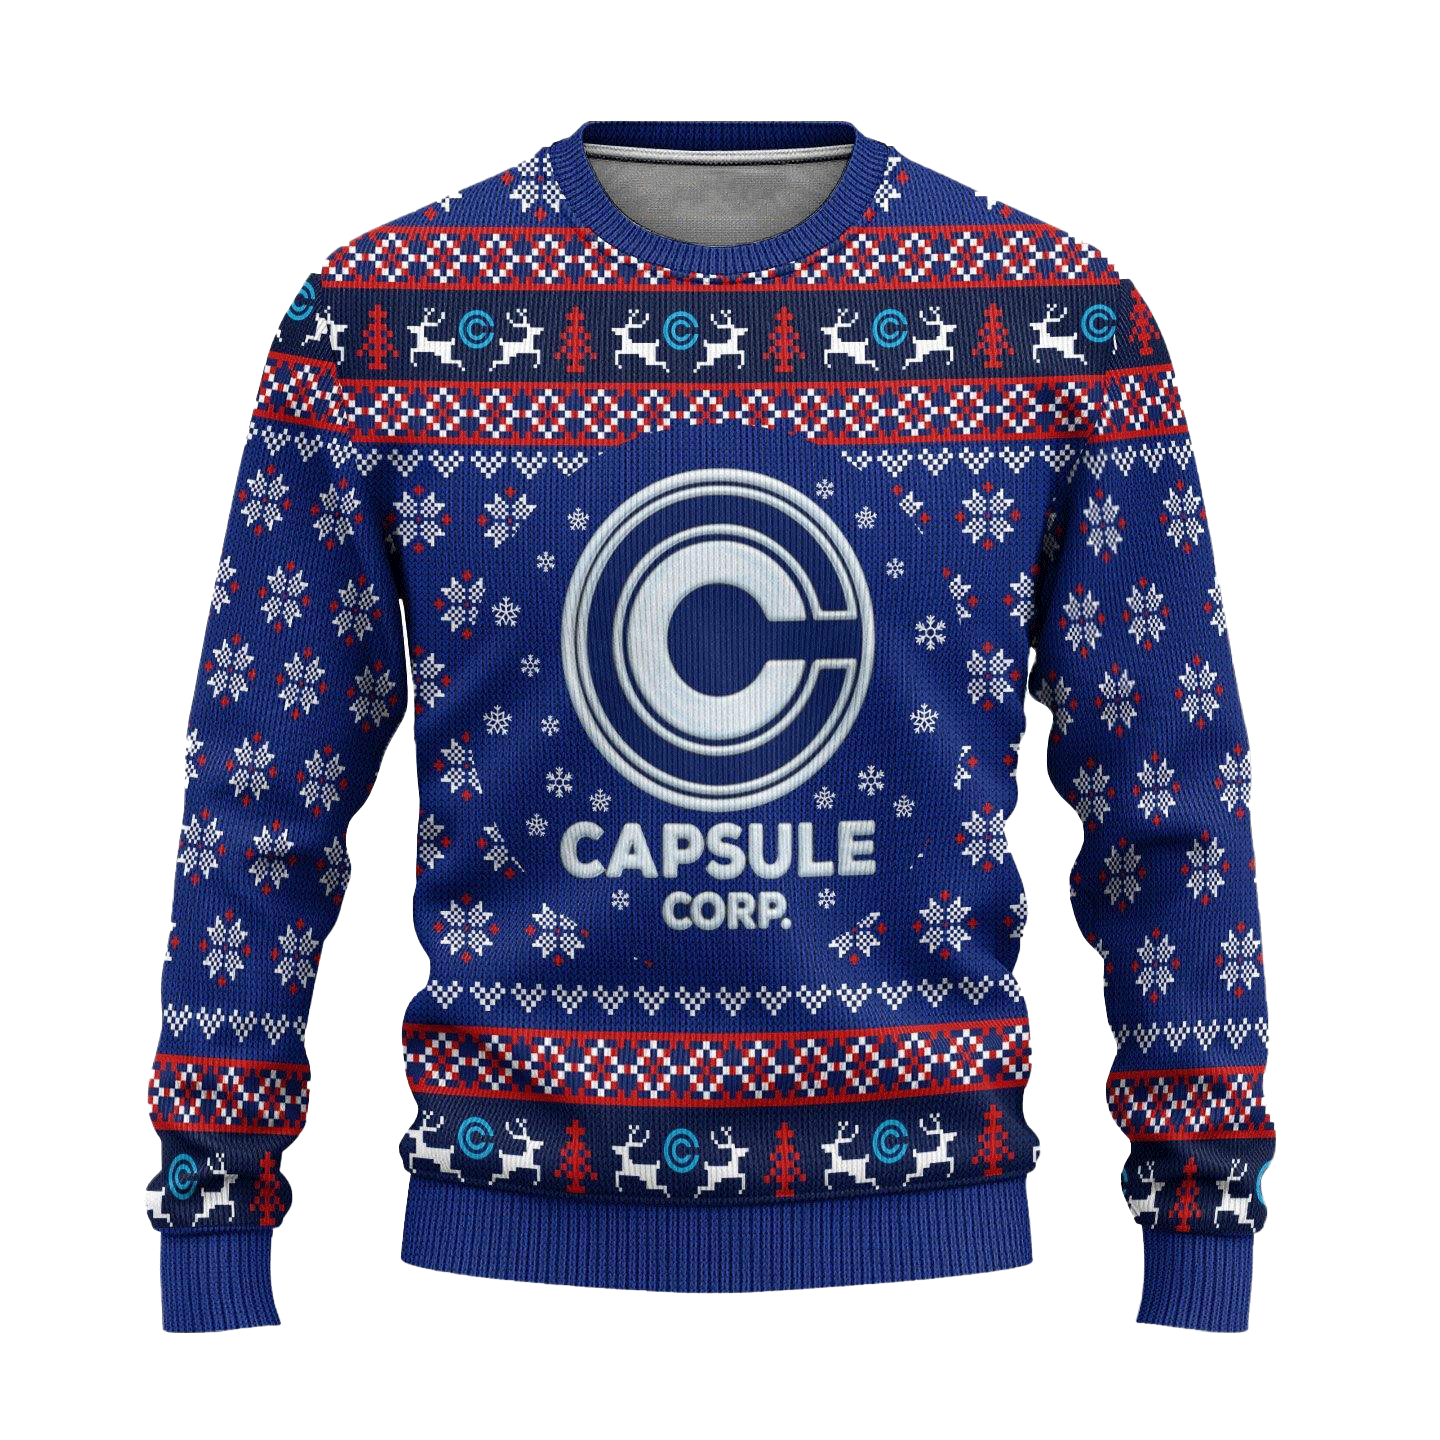 Capsule Corp Ugly Christmas Sweater Dragon Ball Anime Xmas Gift